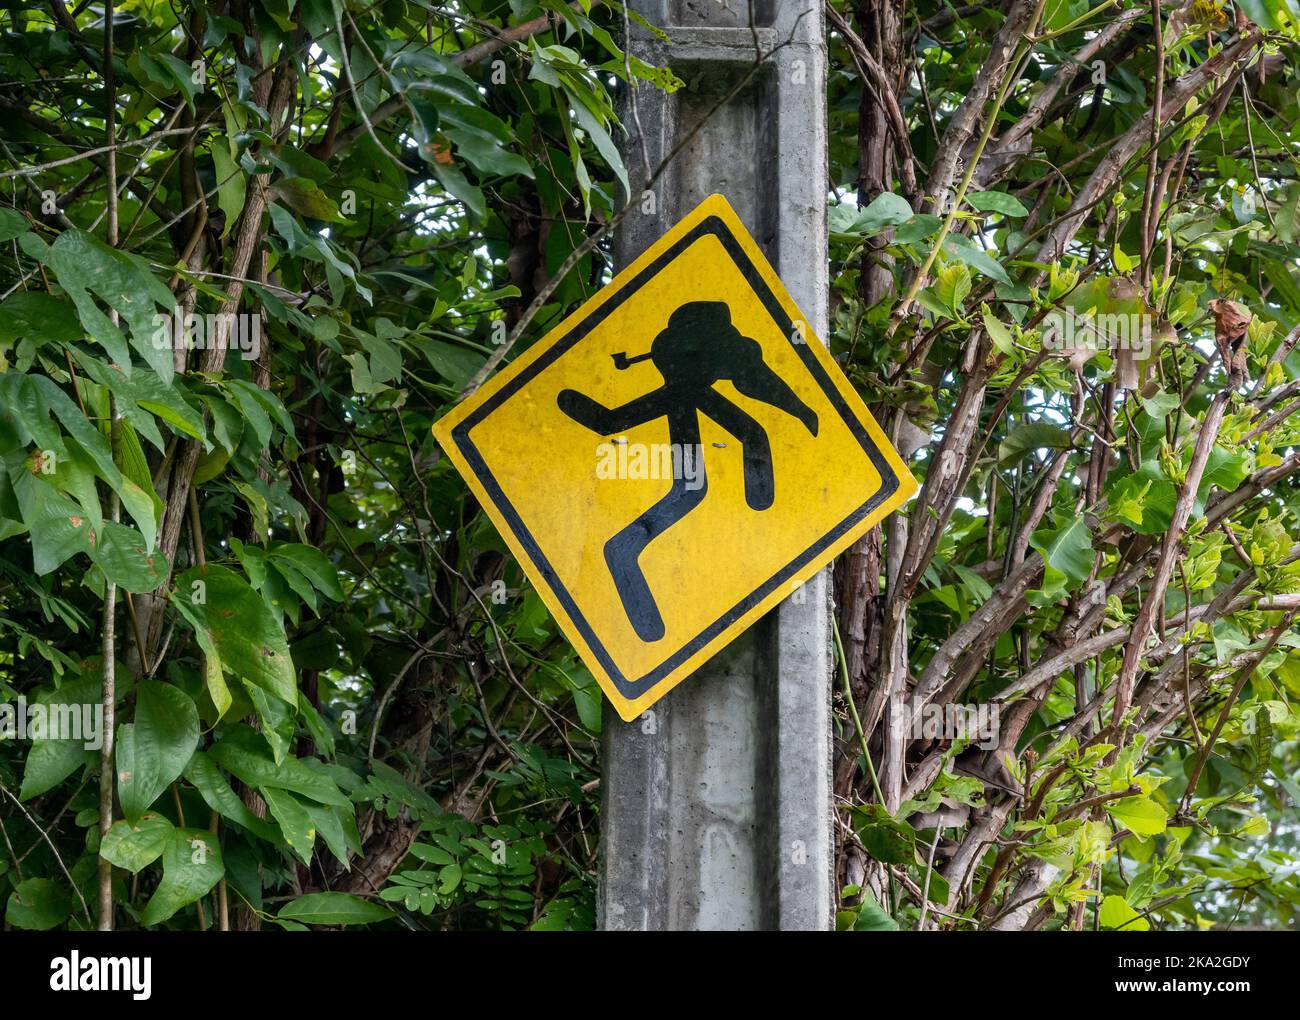 Un signe amusant de SACI Perere, un trickster légendaire à une jambe dans le folklore brésilien. Boa Vista, Roraima State, Brésil. Banque D'Images